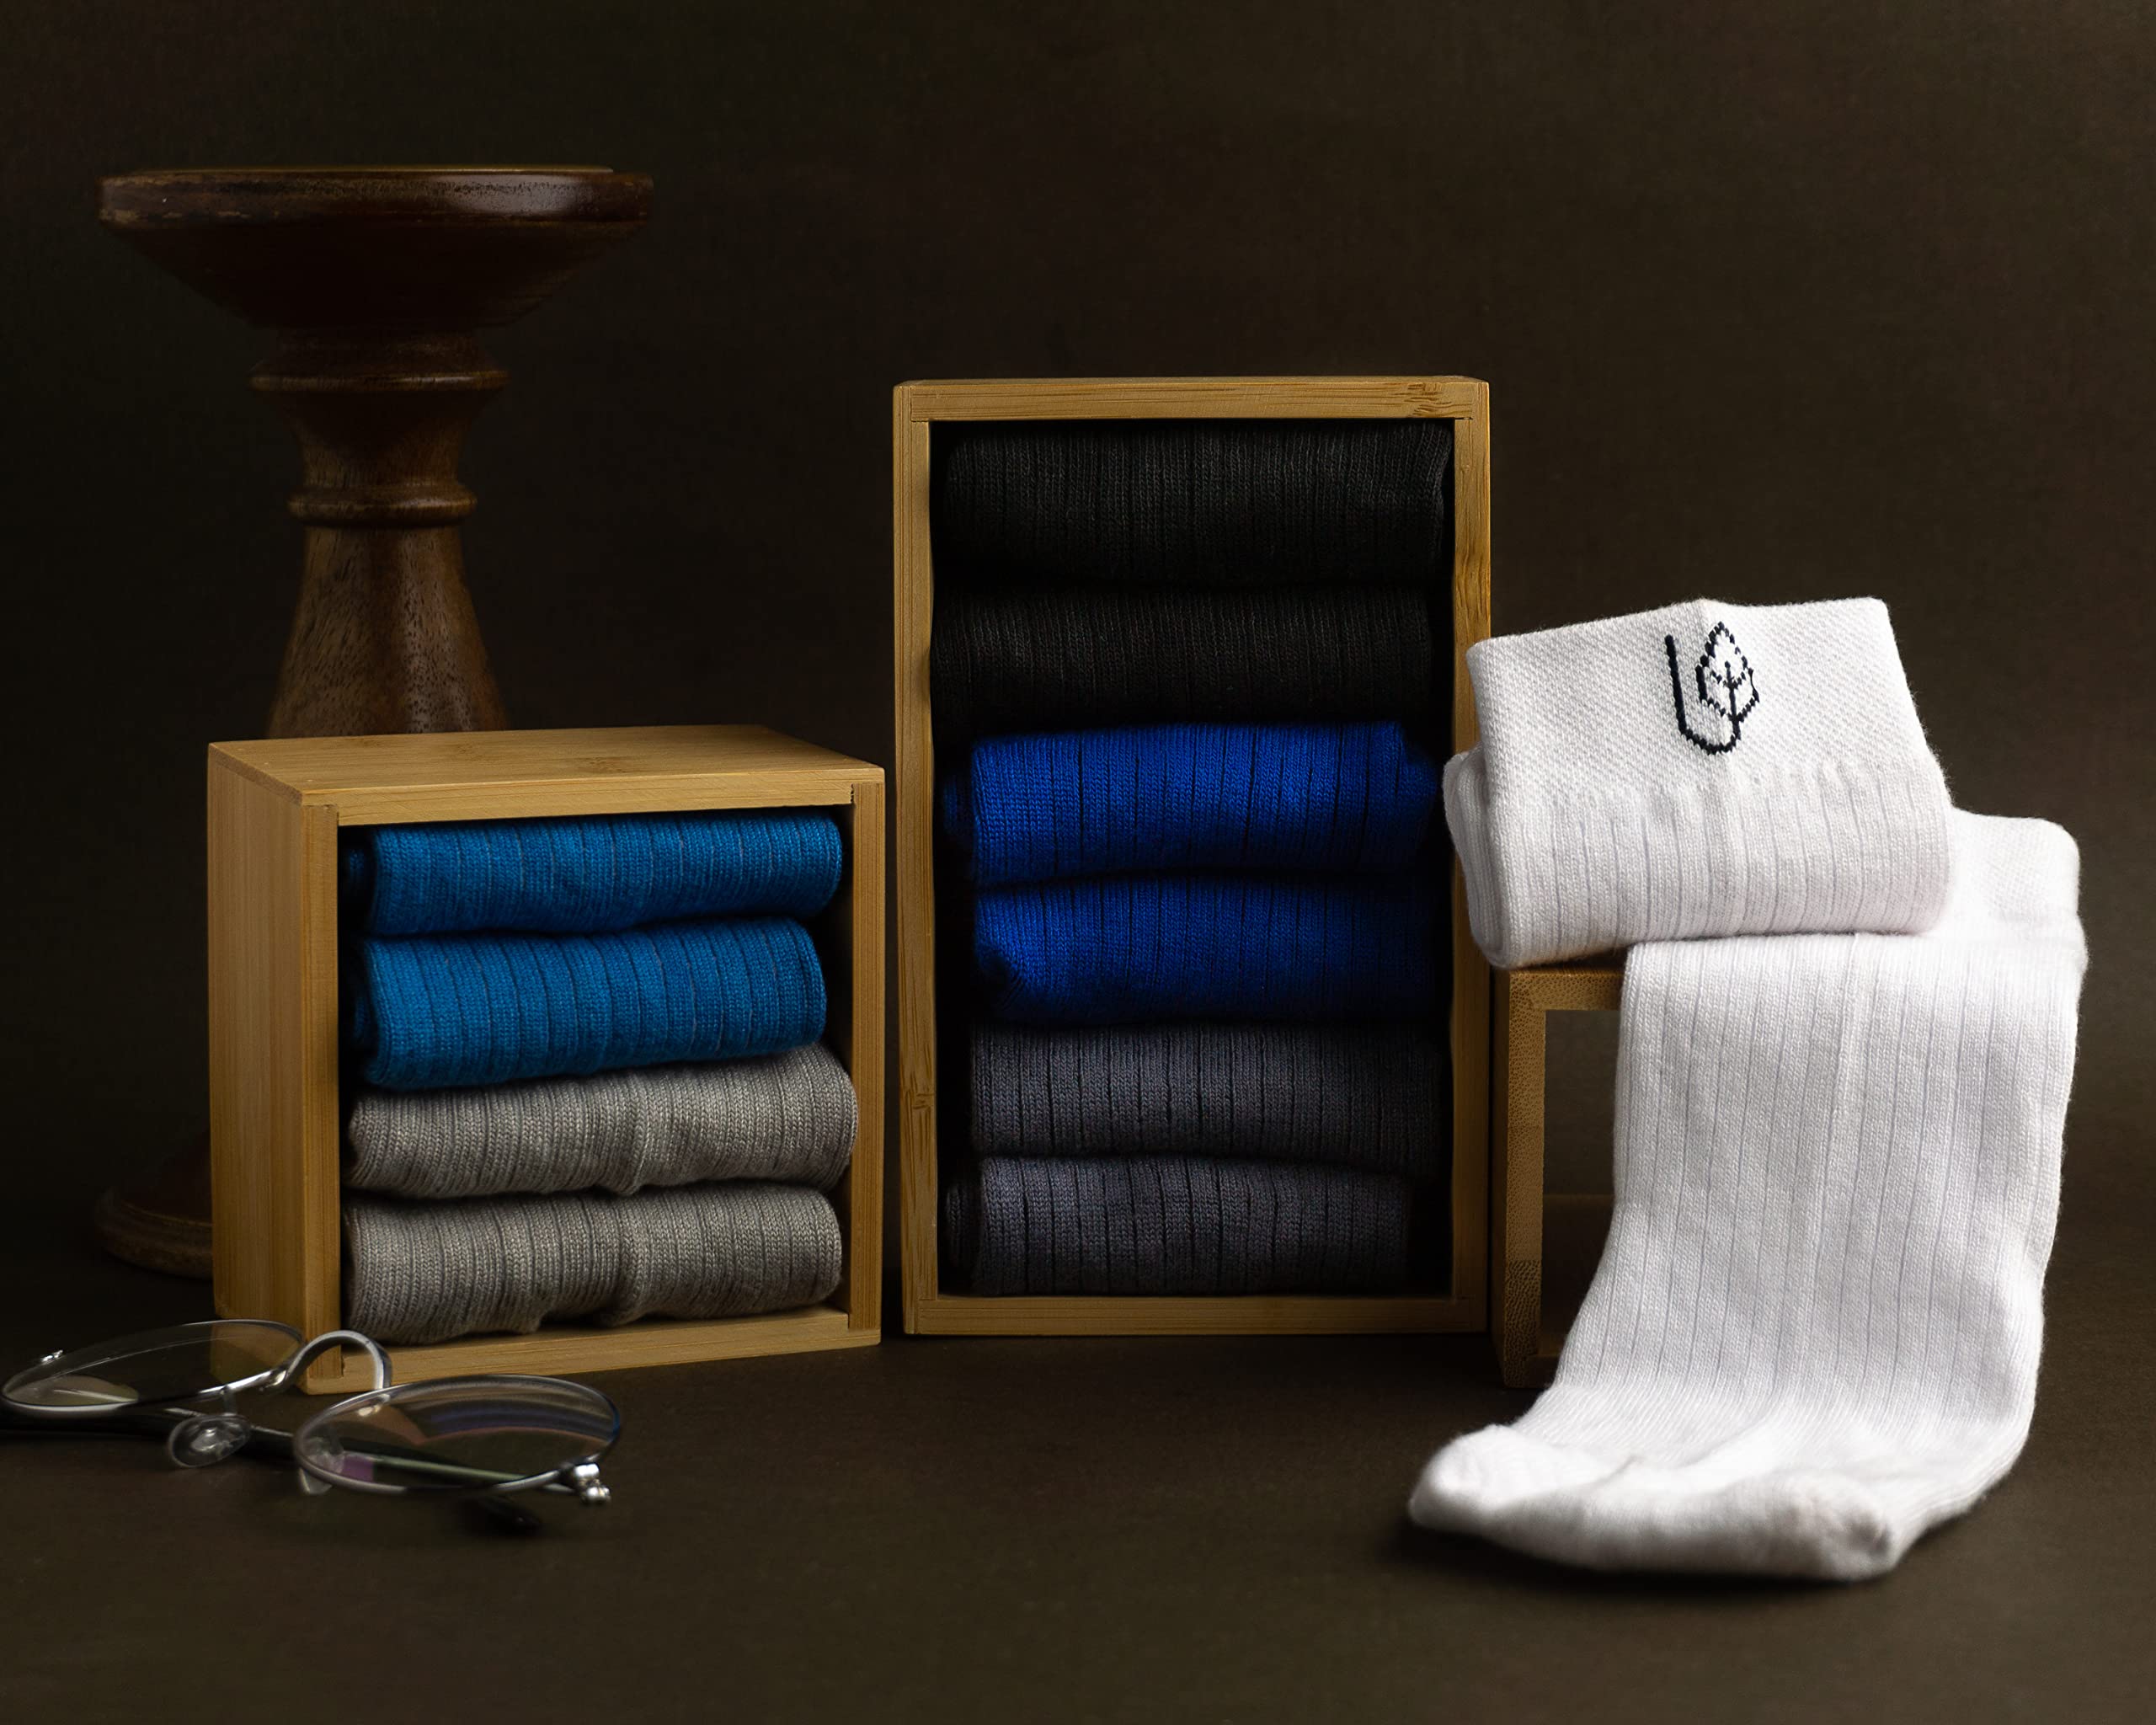 Mush Ultra-Soft, Odorless, Breathable Bamboo Calf Length Formal Socks (Sky Blue, 3)